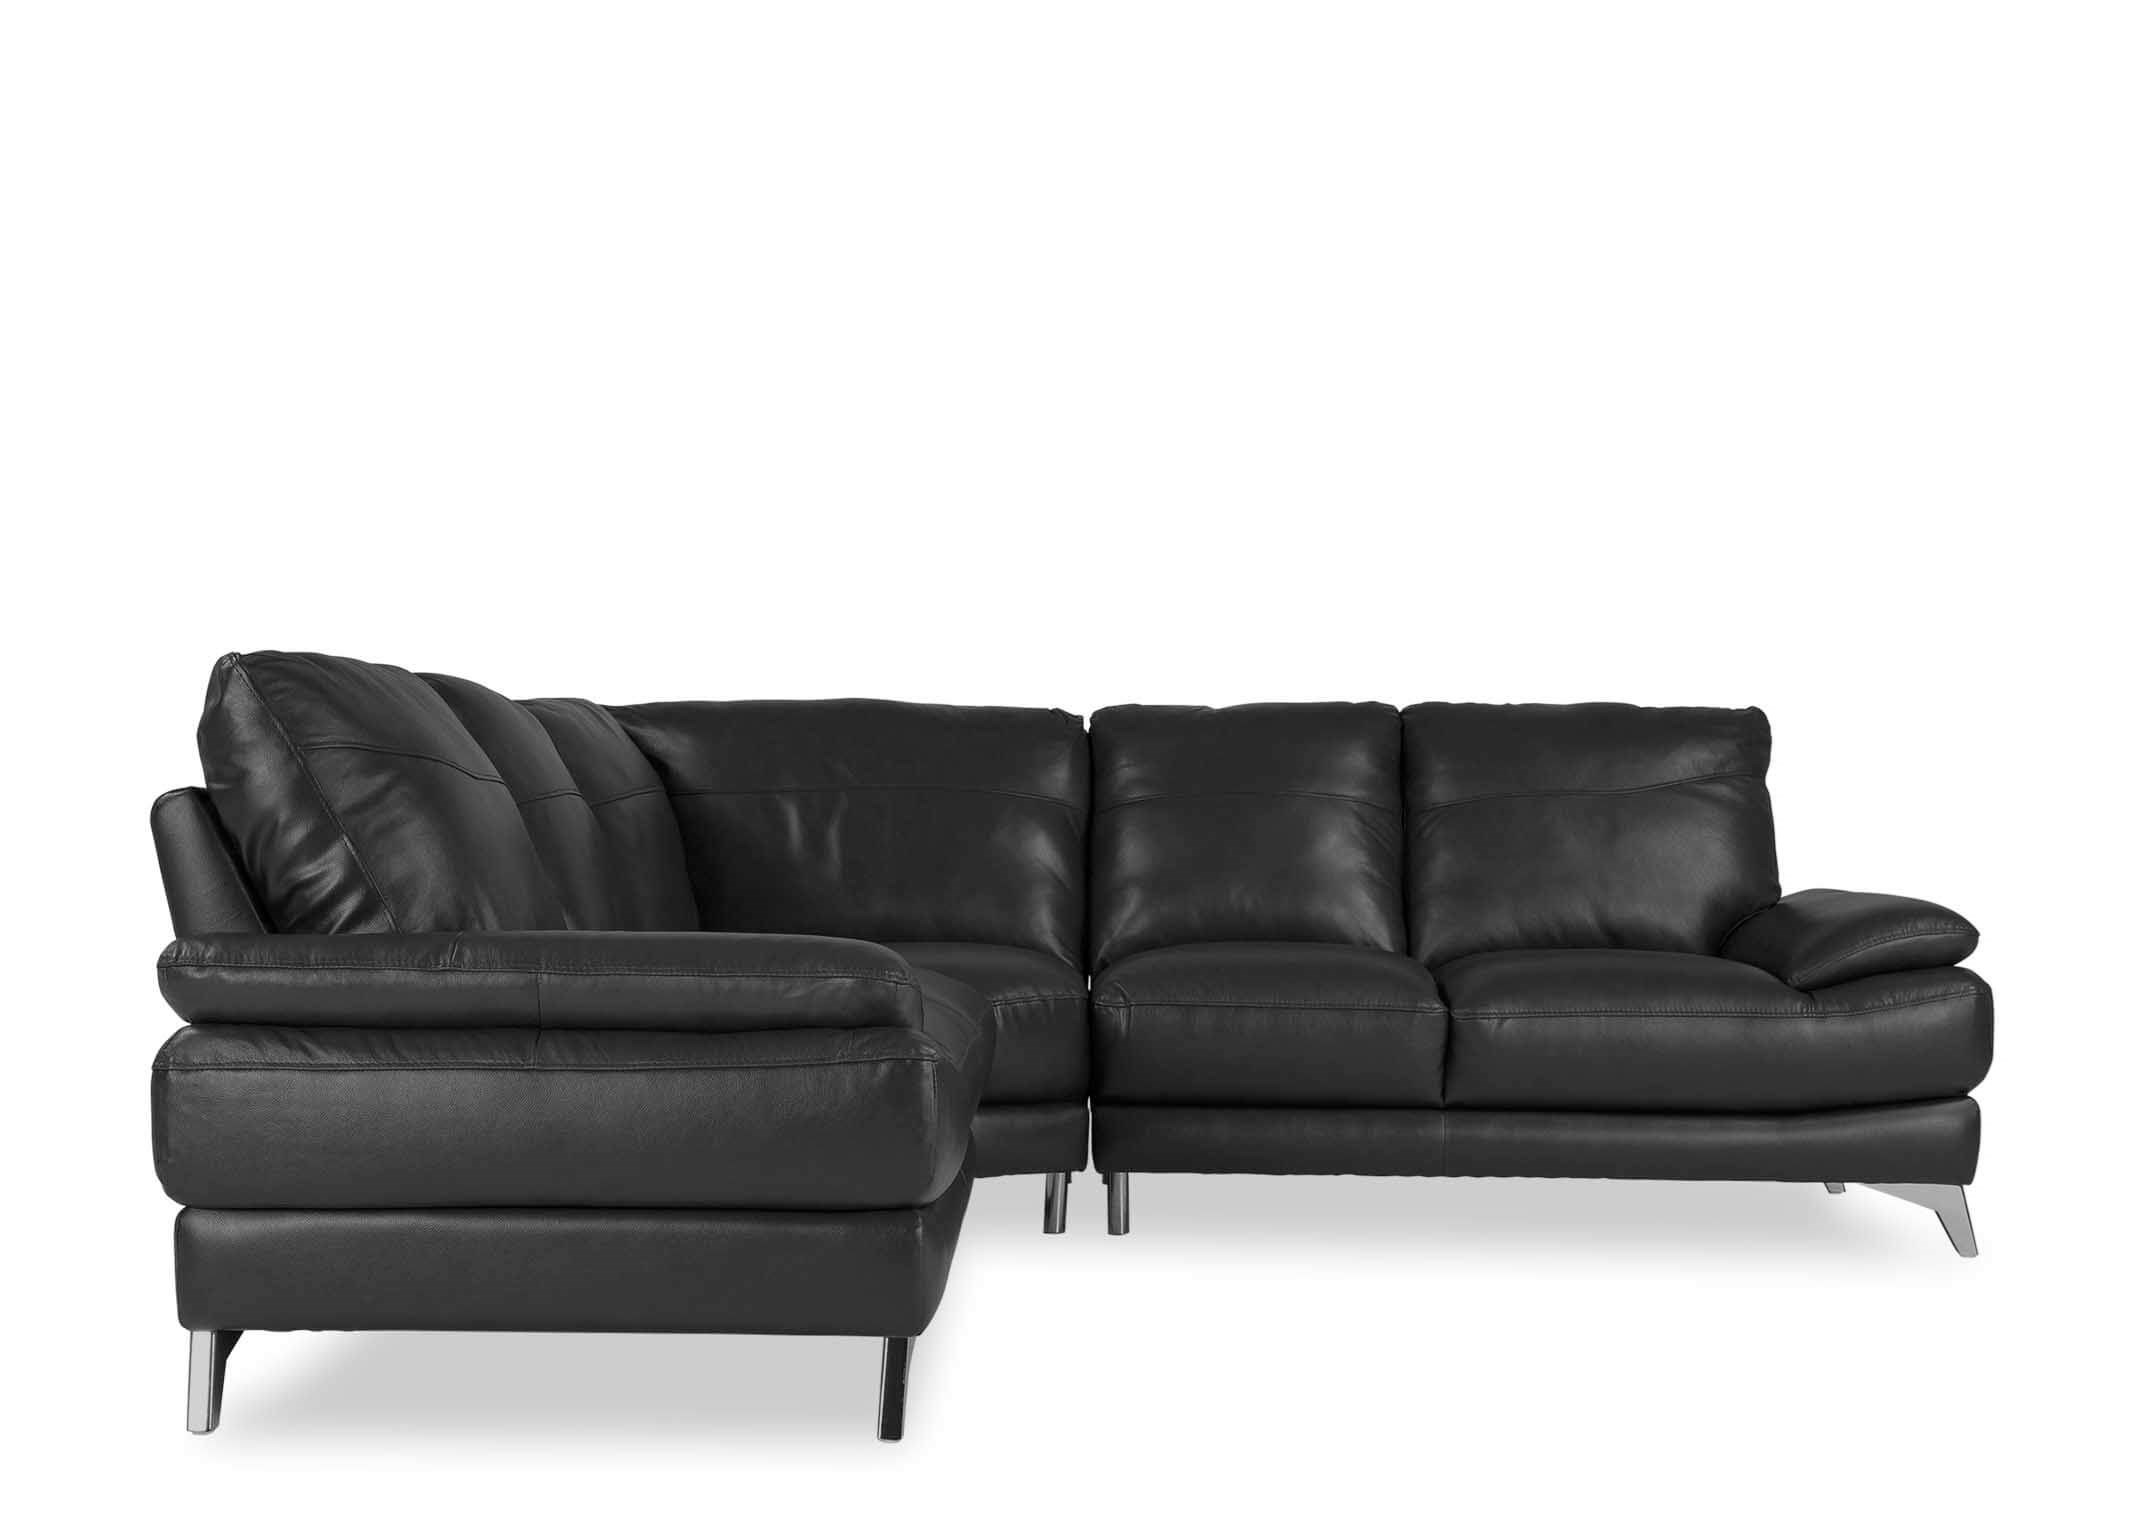 Leather Corner Sofa Ez Living Furniture